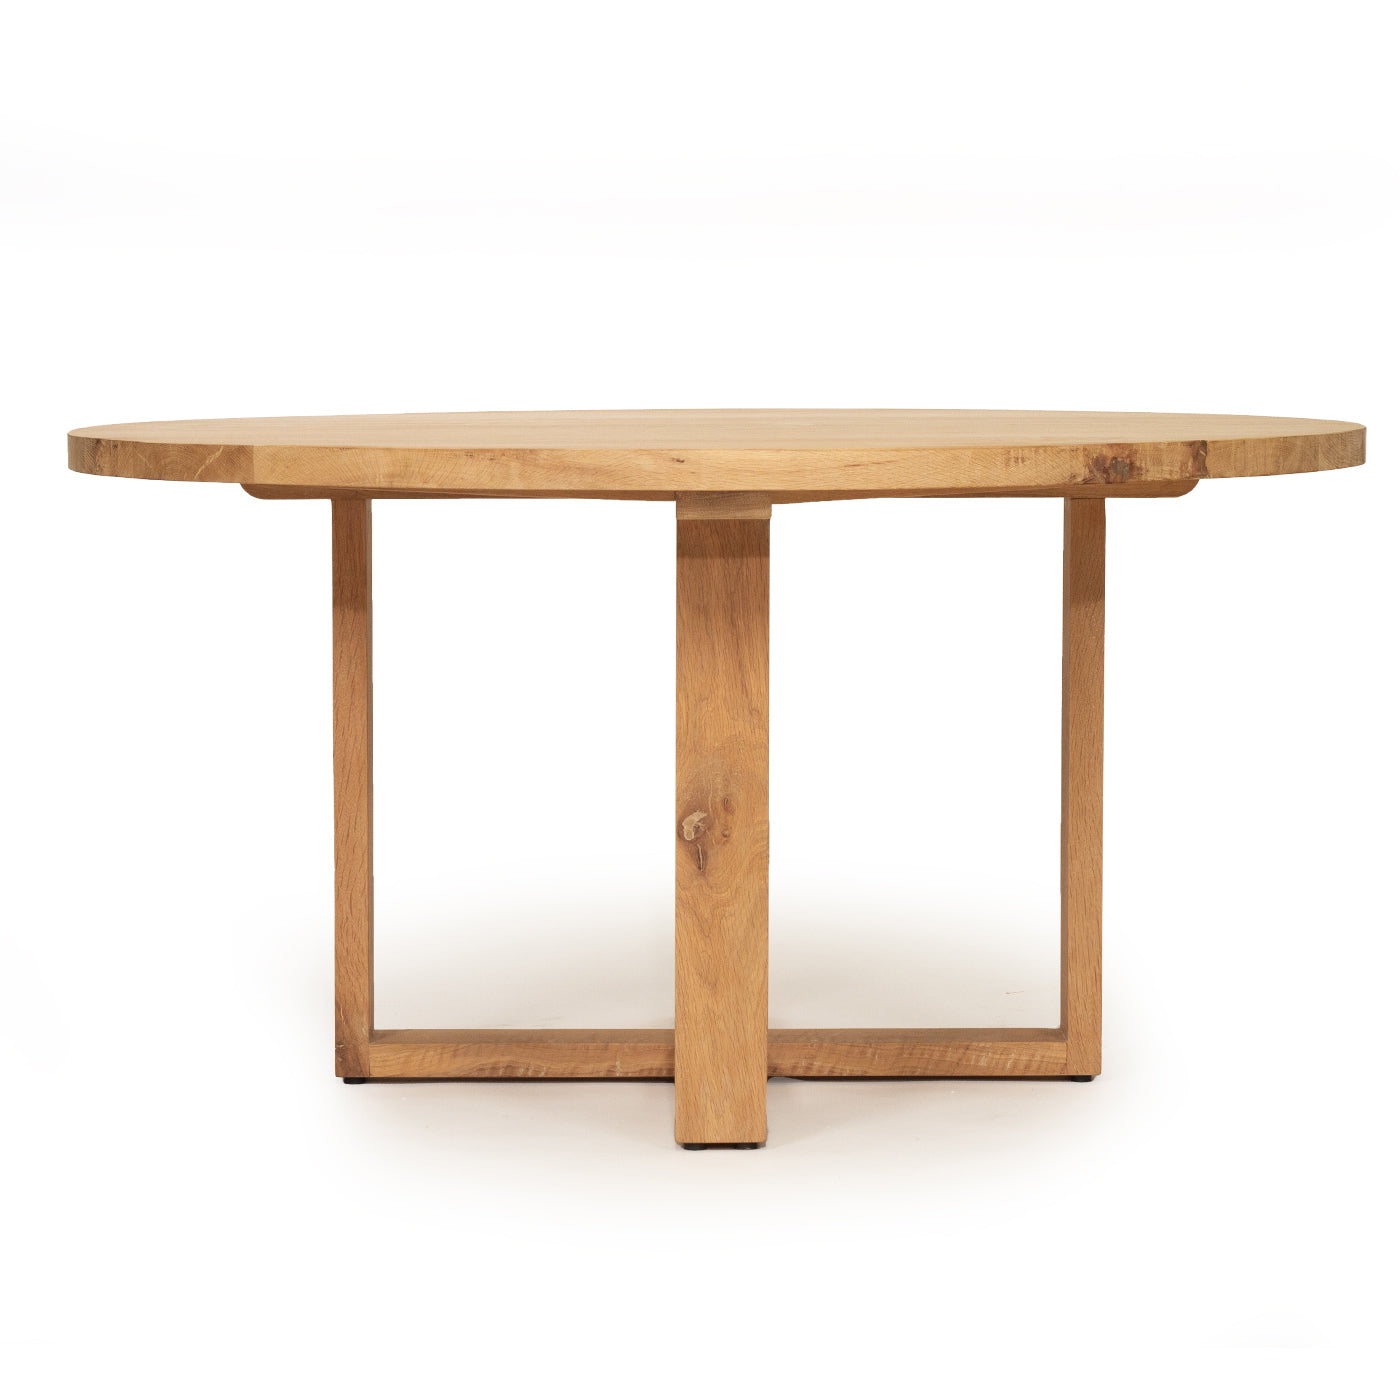 Steffan American Oak Dining Table – 150cm - Notbrand